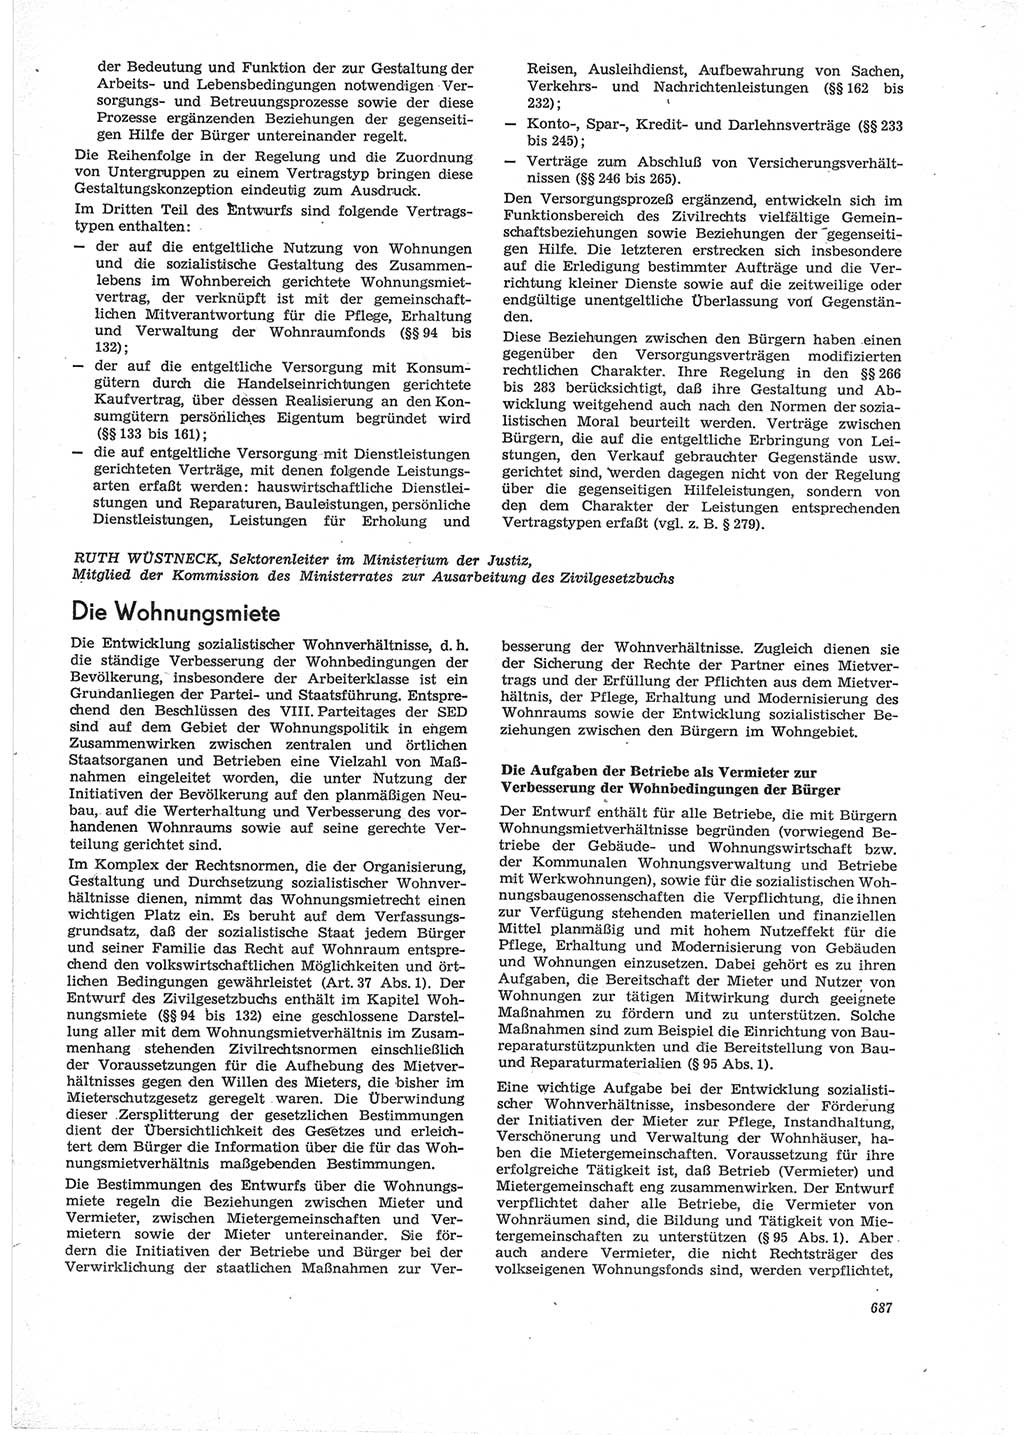 Neue Justiz (NJ), Zeitschrift für Recht und Rechtswissenschaft [Deutsche Demokratische Republik (DDR)], 28. Jahrgang 1974, Seite 687 (NJ DDR 1974, S. 687)